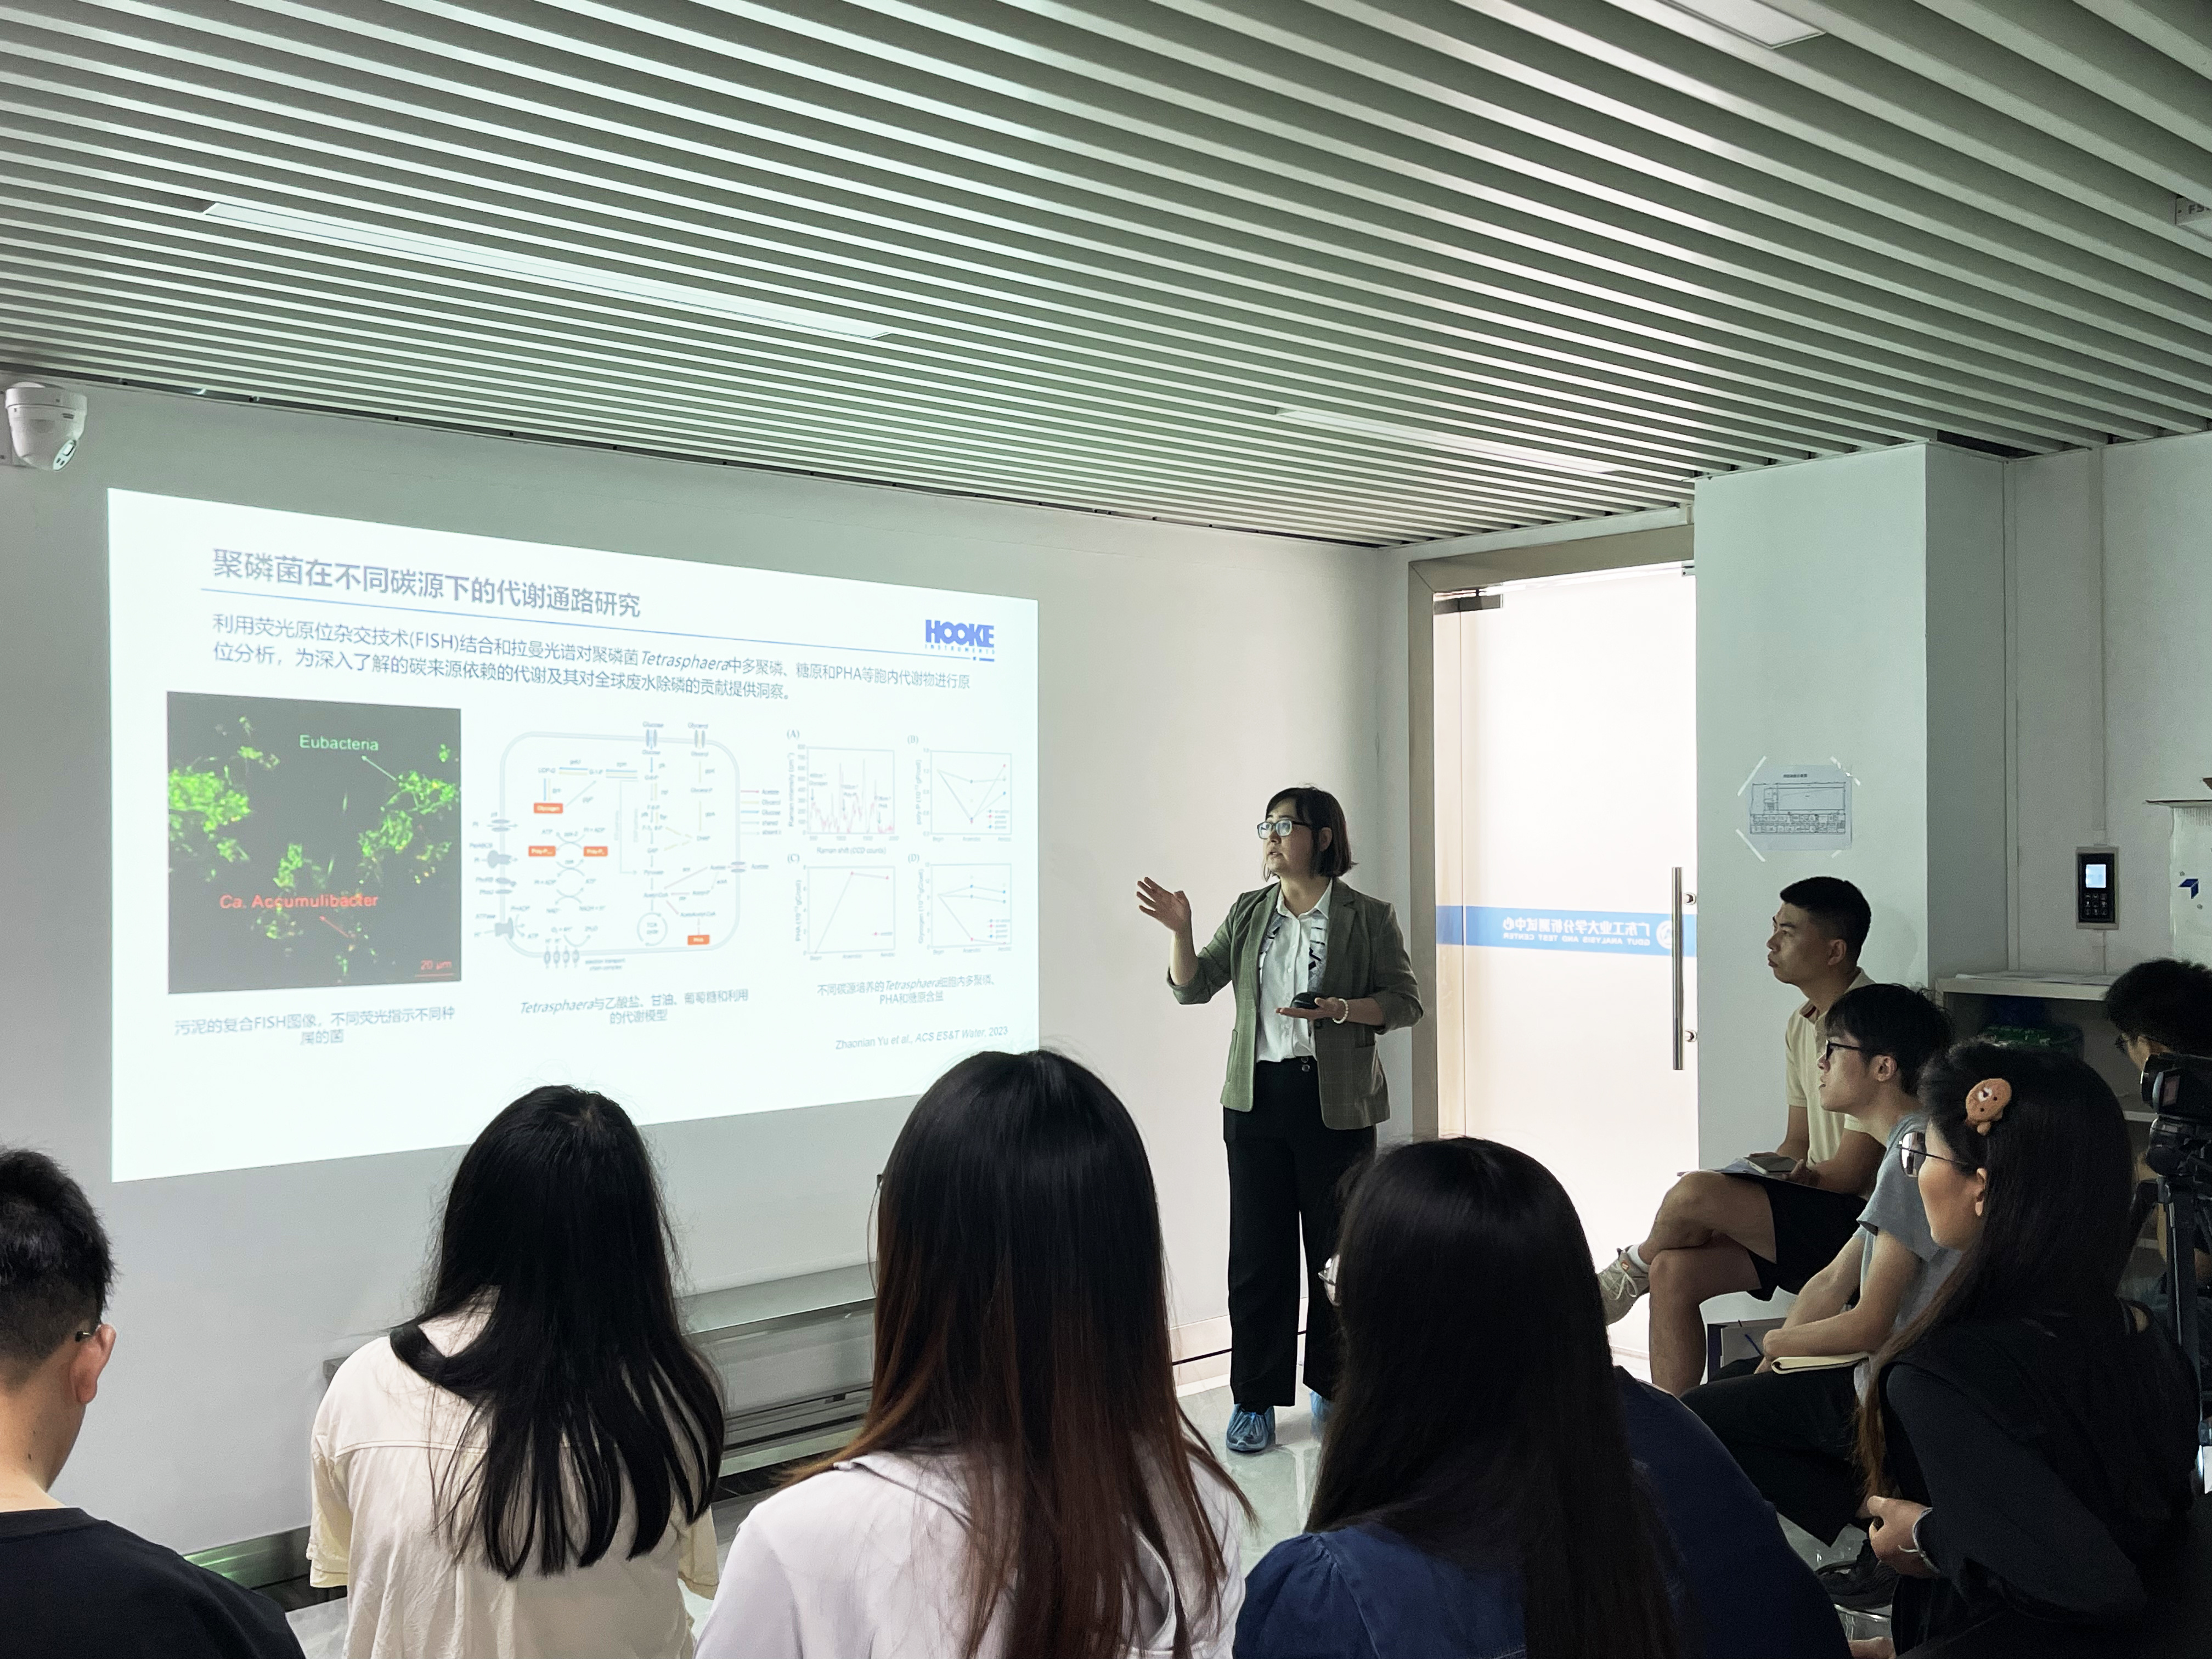 长光辰英工程师团队走进广东工业大学分析测试中心，共促科研创新与应用发展